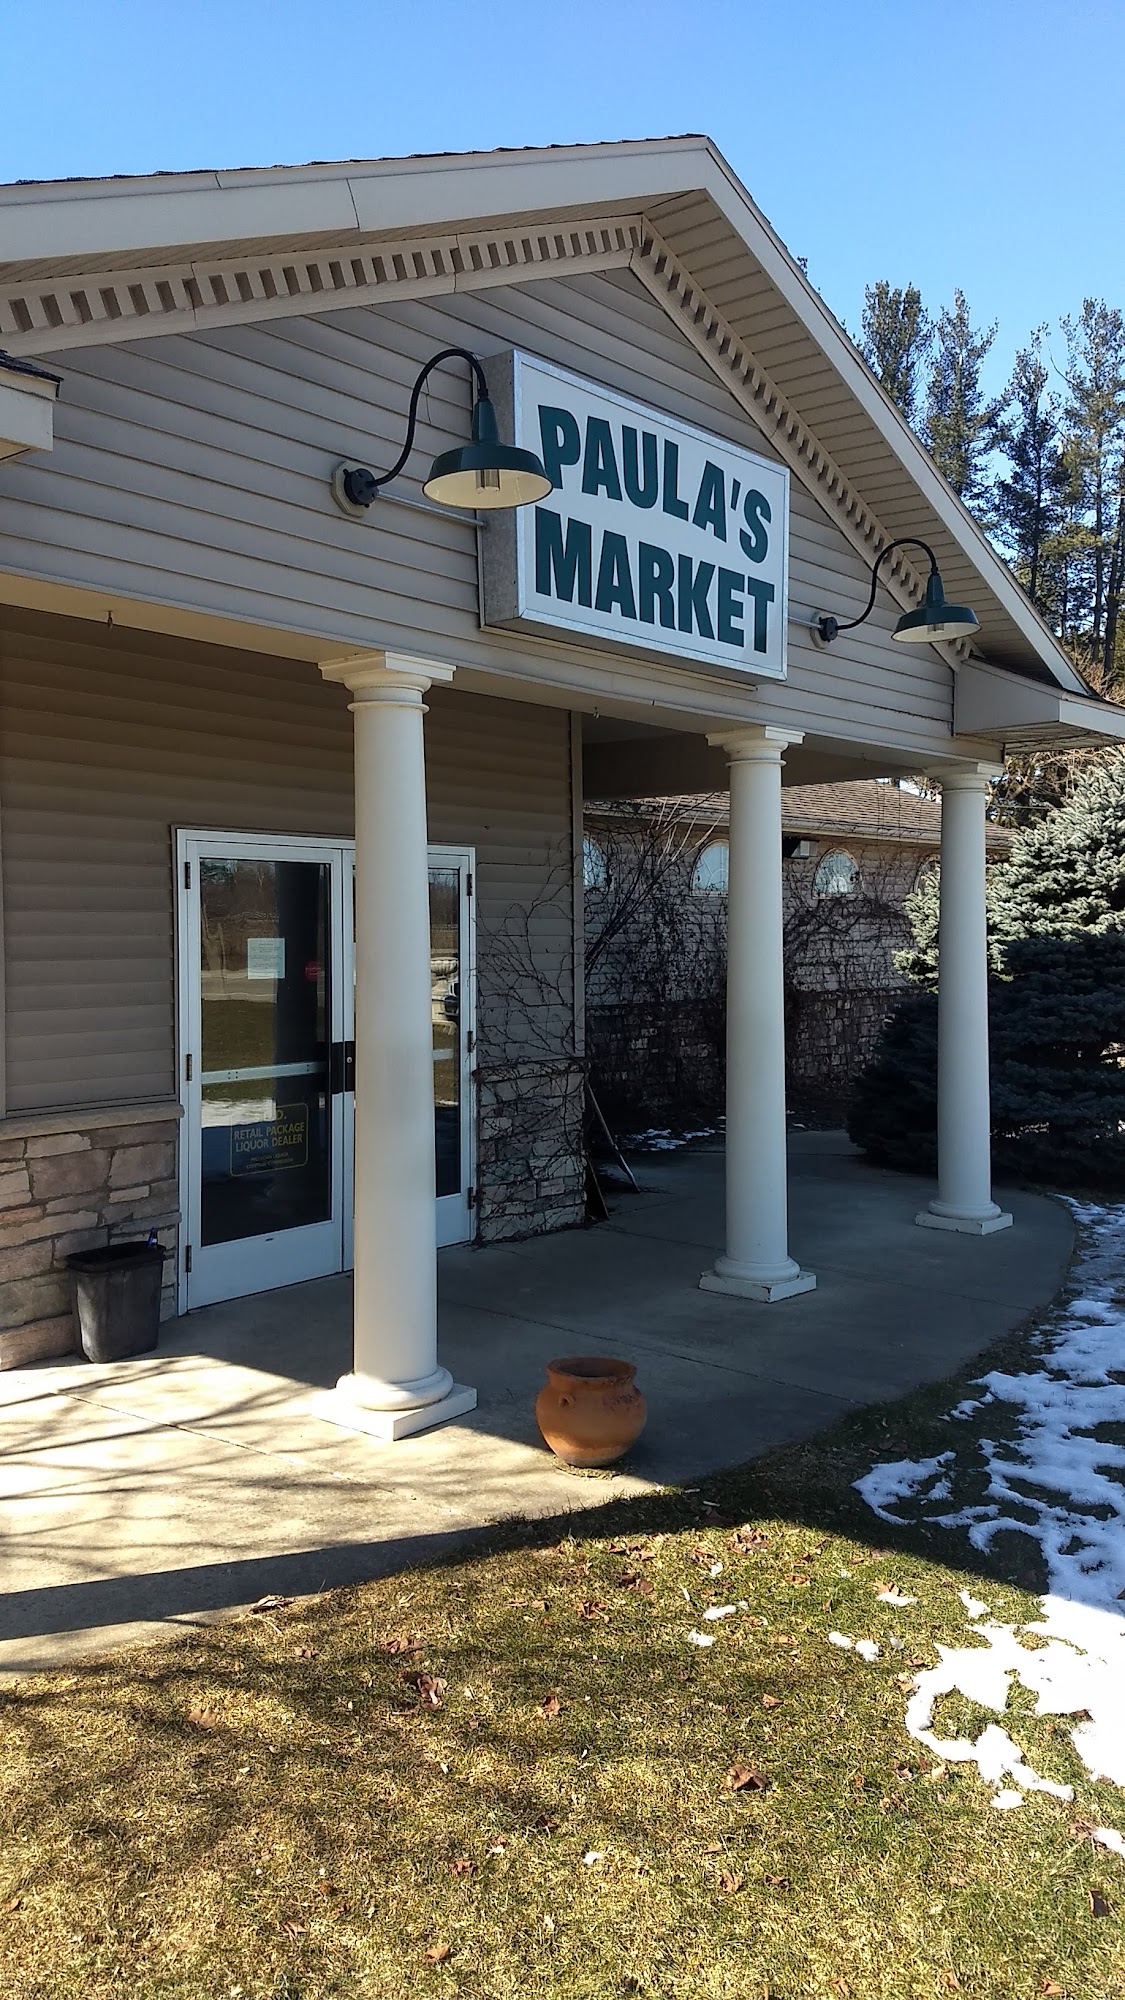 Paula's Market